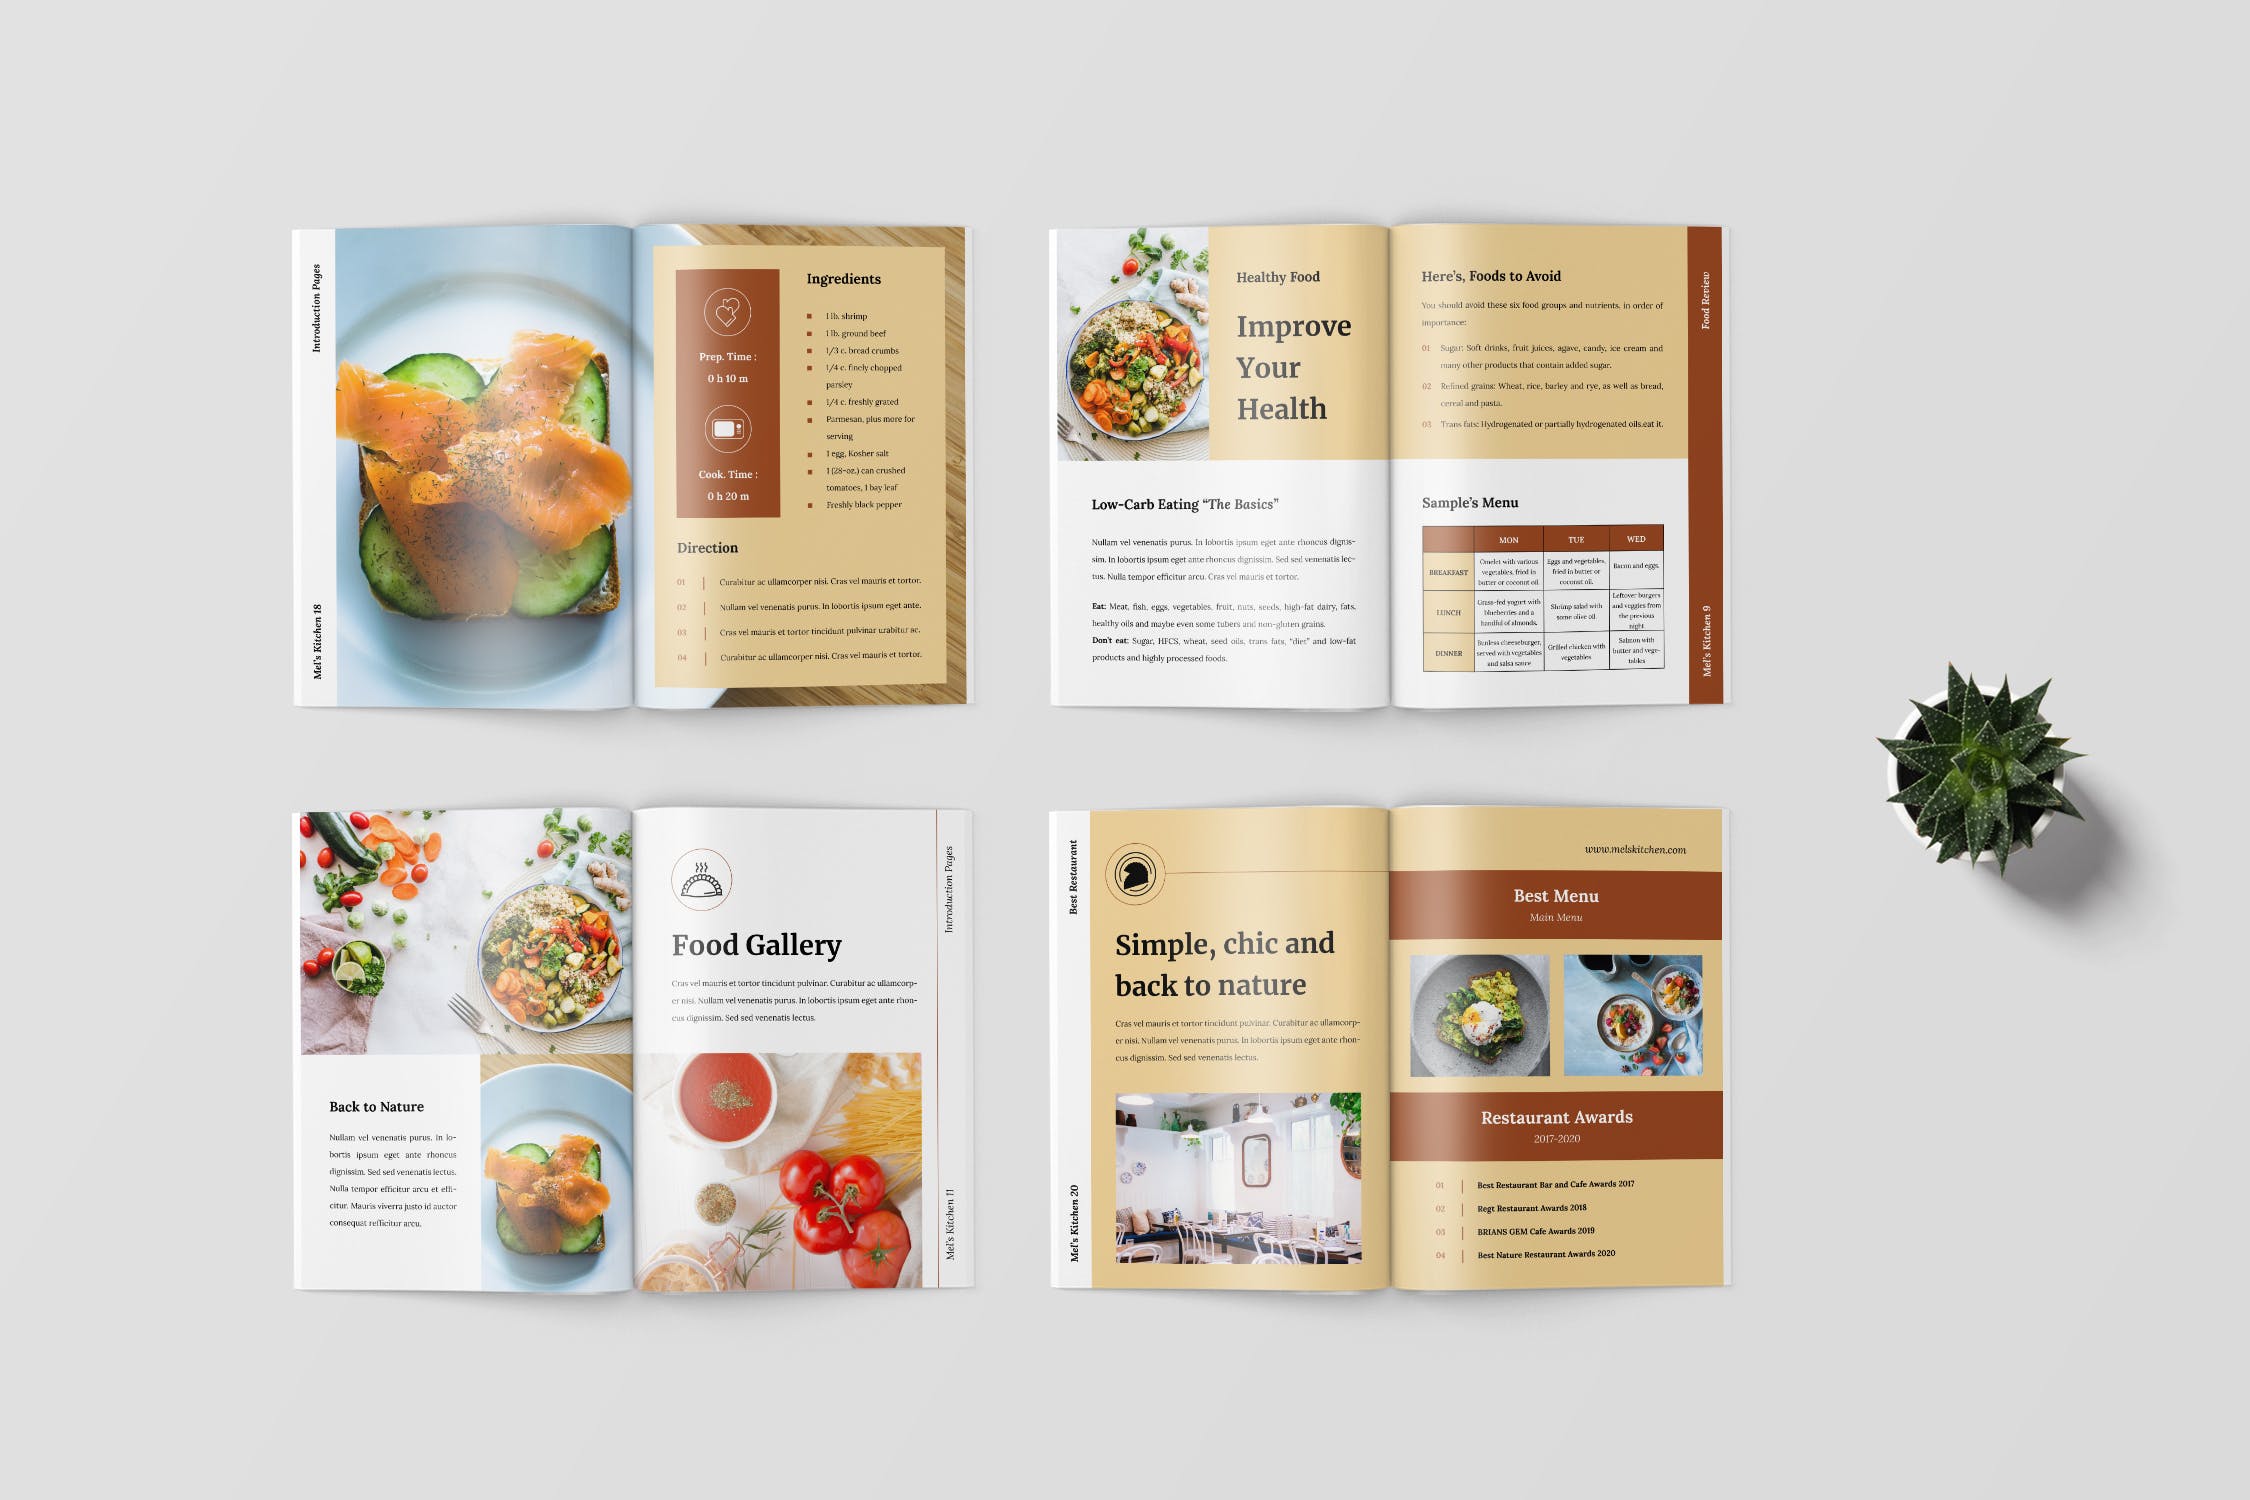 食谱美食主题杂志排版设计制作模板 Recipe Magazine Template插图(3)